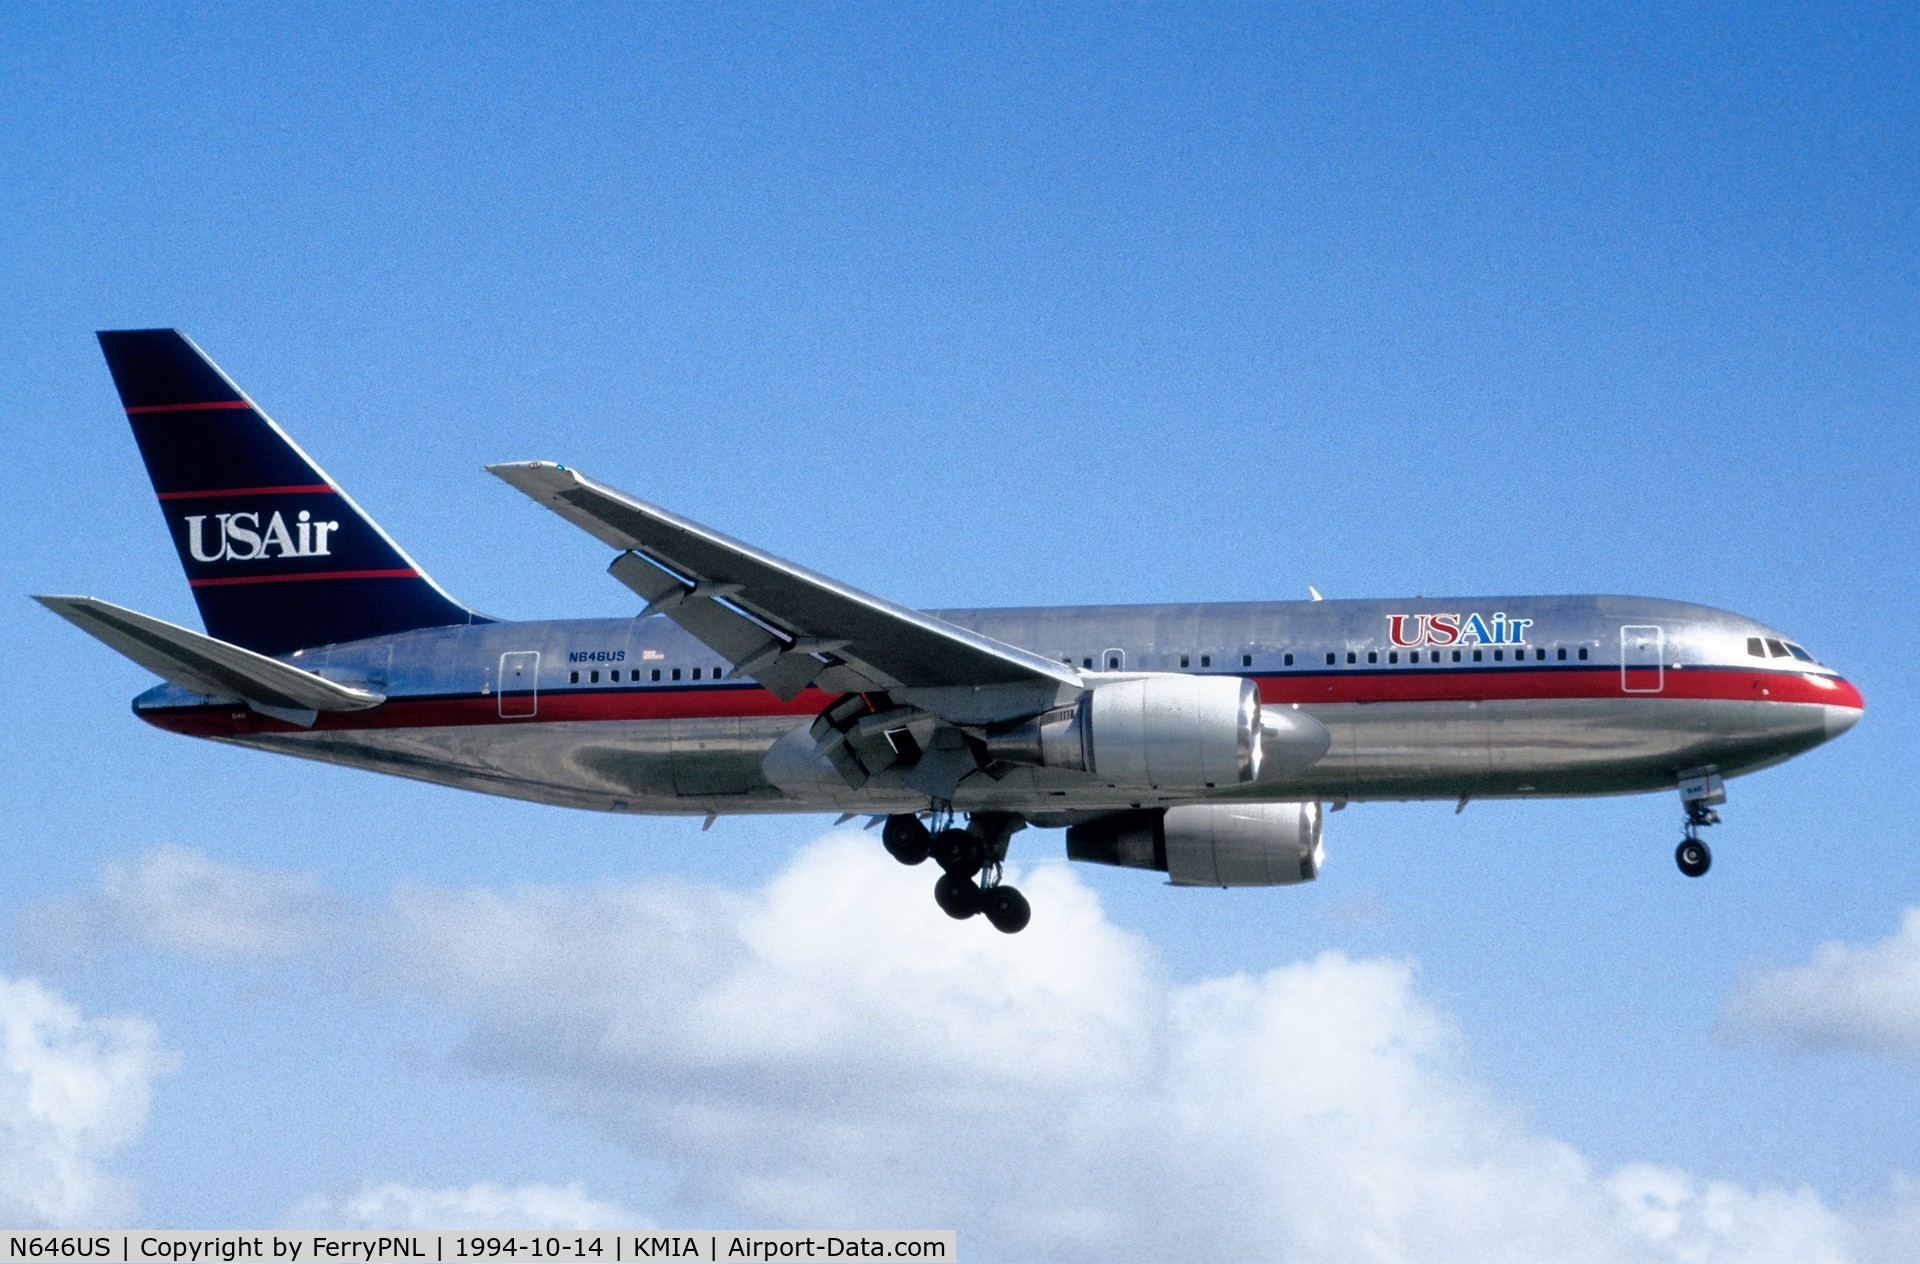 N646US, 1987 Boeing 767-201/ER C/N 23898, USAir B762 arriving in MIA